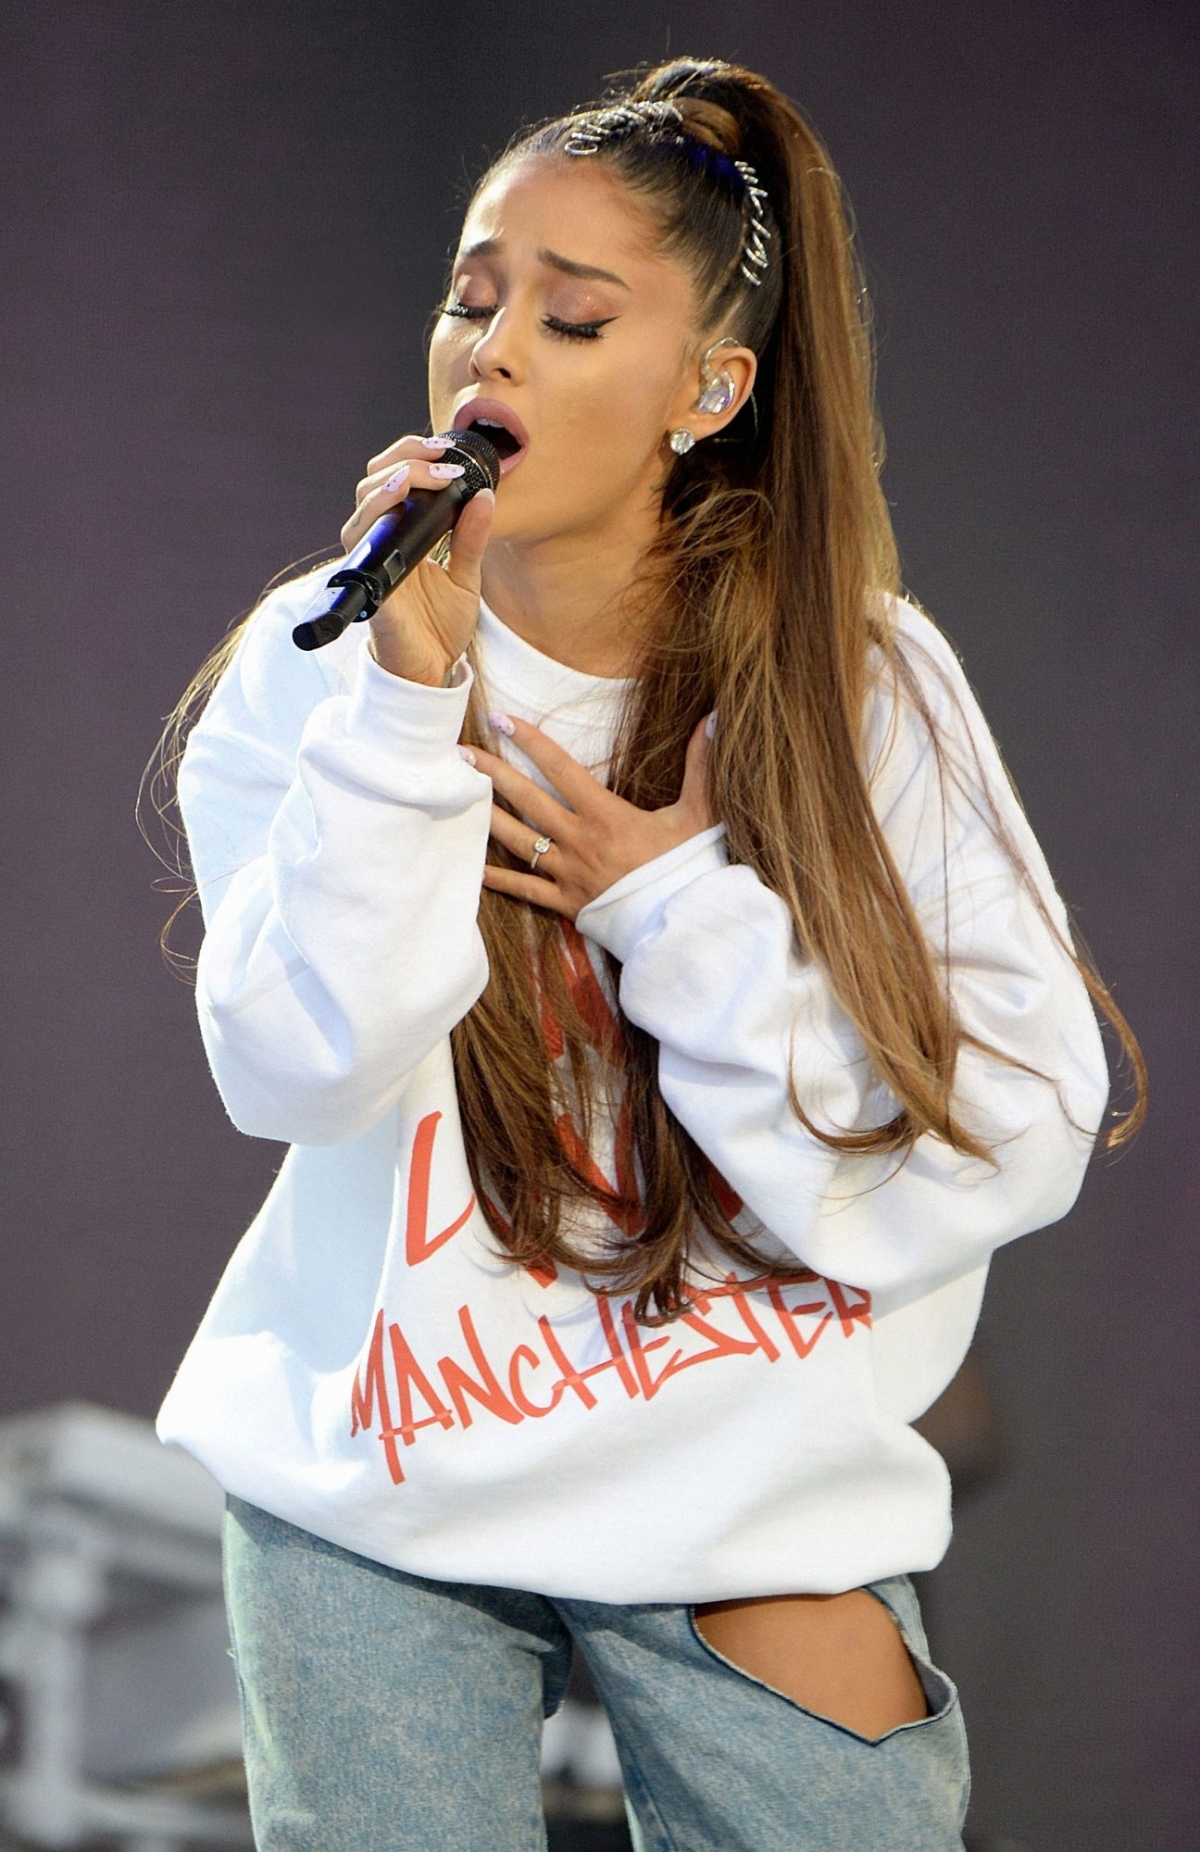 Ariana Grande vẫn chưa thôi đau buồn, 4 năm sau vụ đánh bom ở Manchester - Ảnh 2.